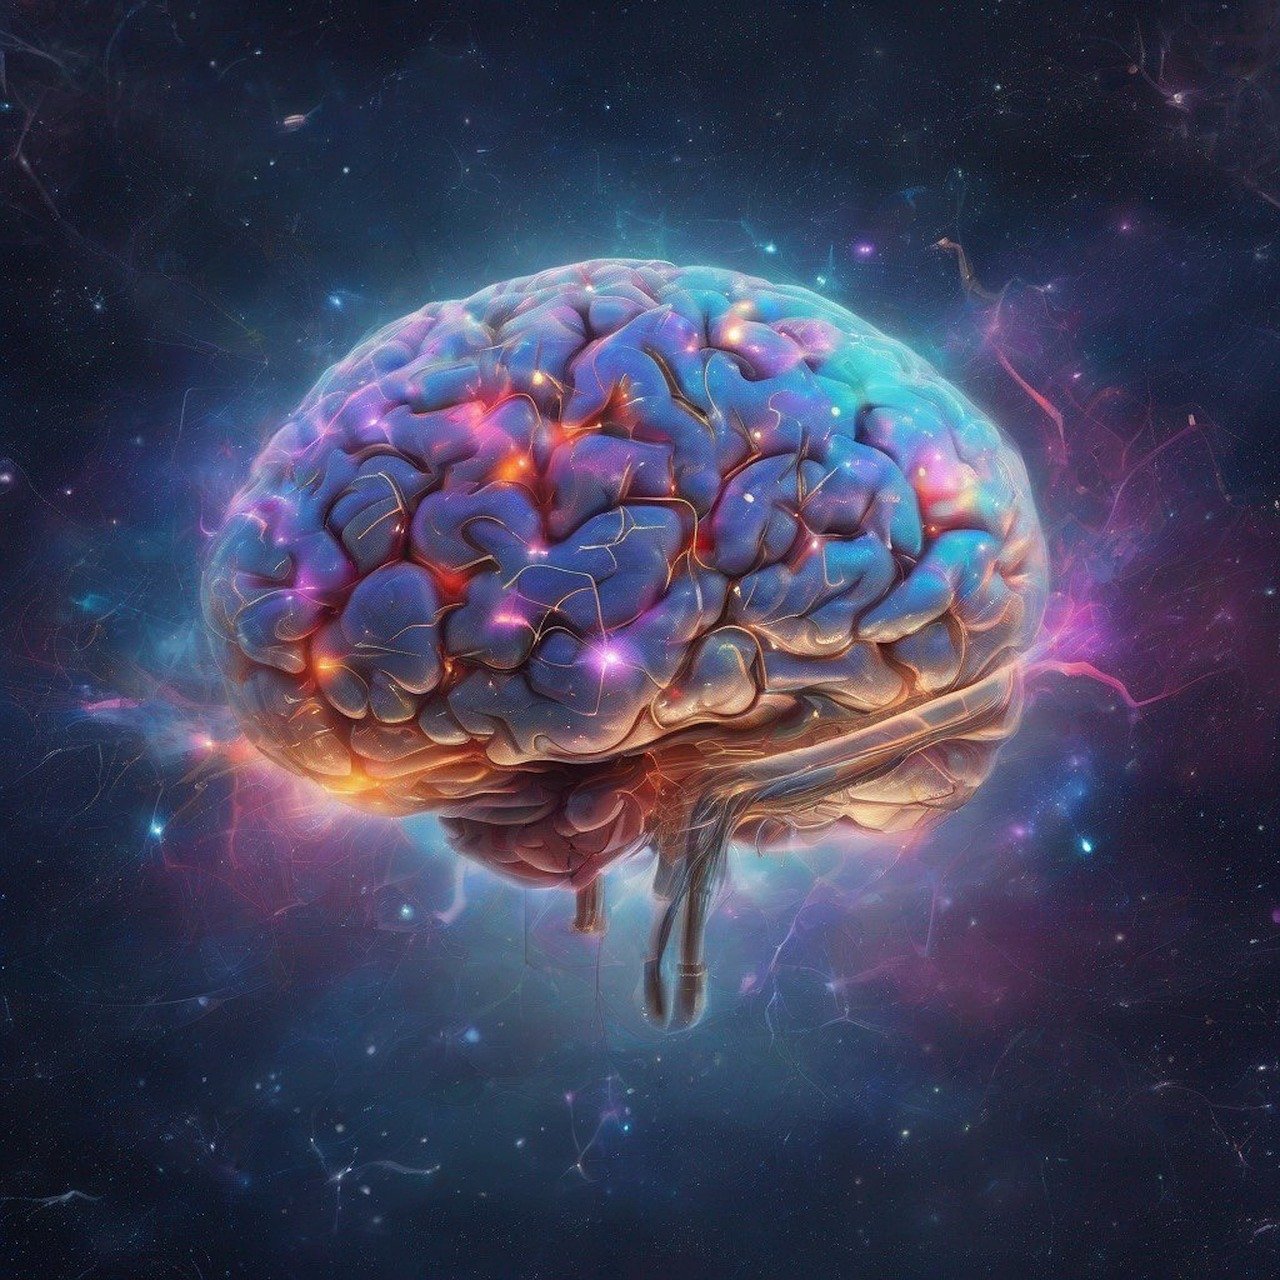 Na fotografiji je prikazan ljudski mozak koji svijetli u raznim bojama poput plave, ljubičaste i ružičaste na pozadini koja podsjeća na svemirsku maglicu. Ova slika može biti zanimljiva jer kombinira ljudski mozak, simbol misli i inteligencije, s kozmičkim elementom, sugerirajući beskrajne mogućnosti ljudskog uma ili njegovu povezanost s univerzumom.